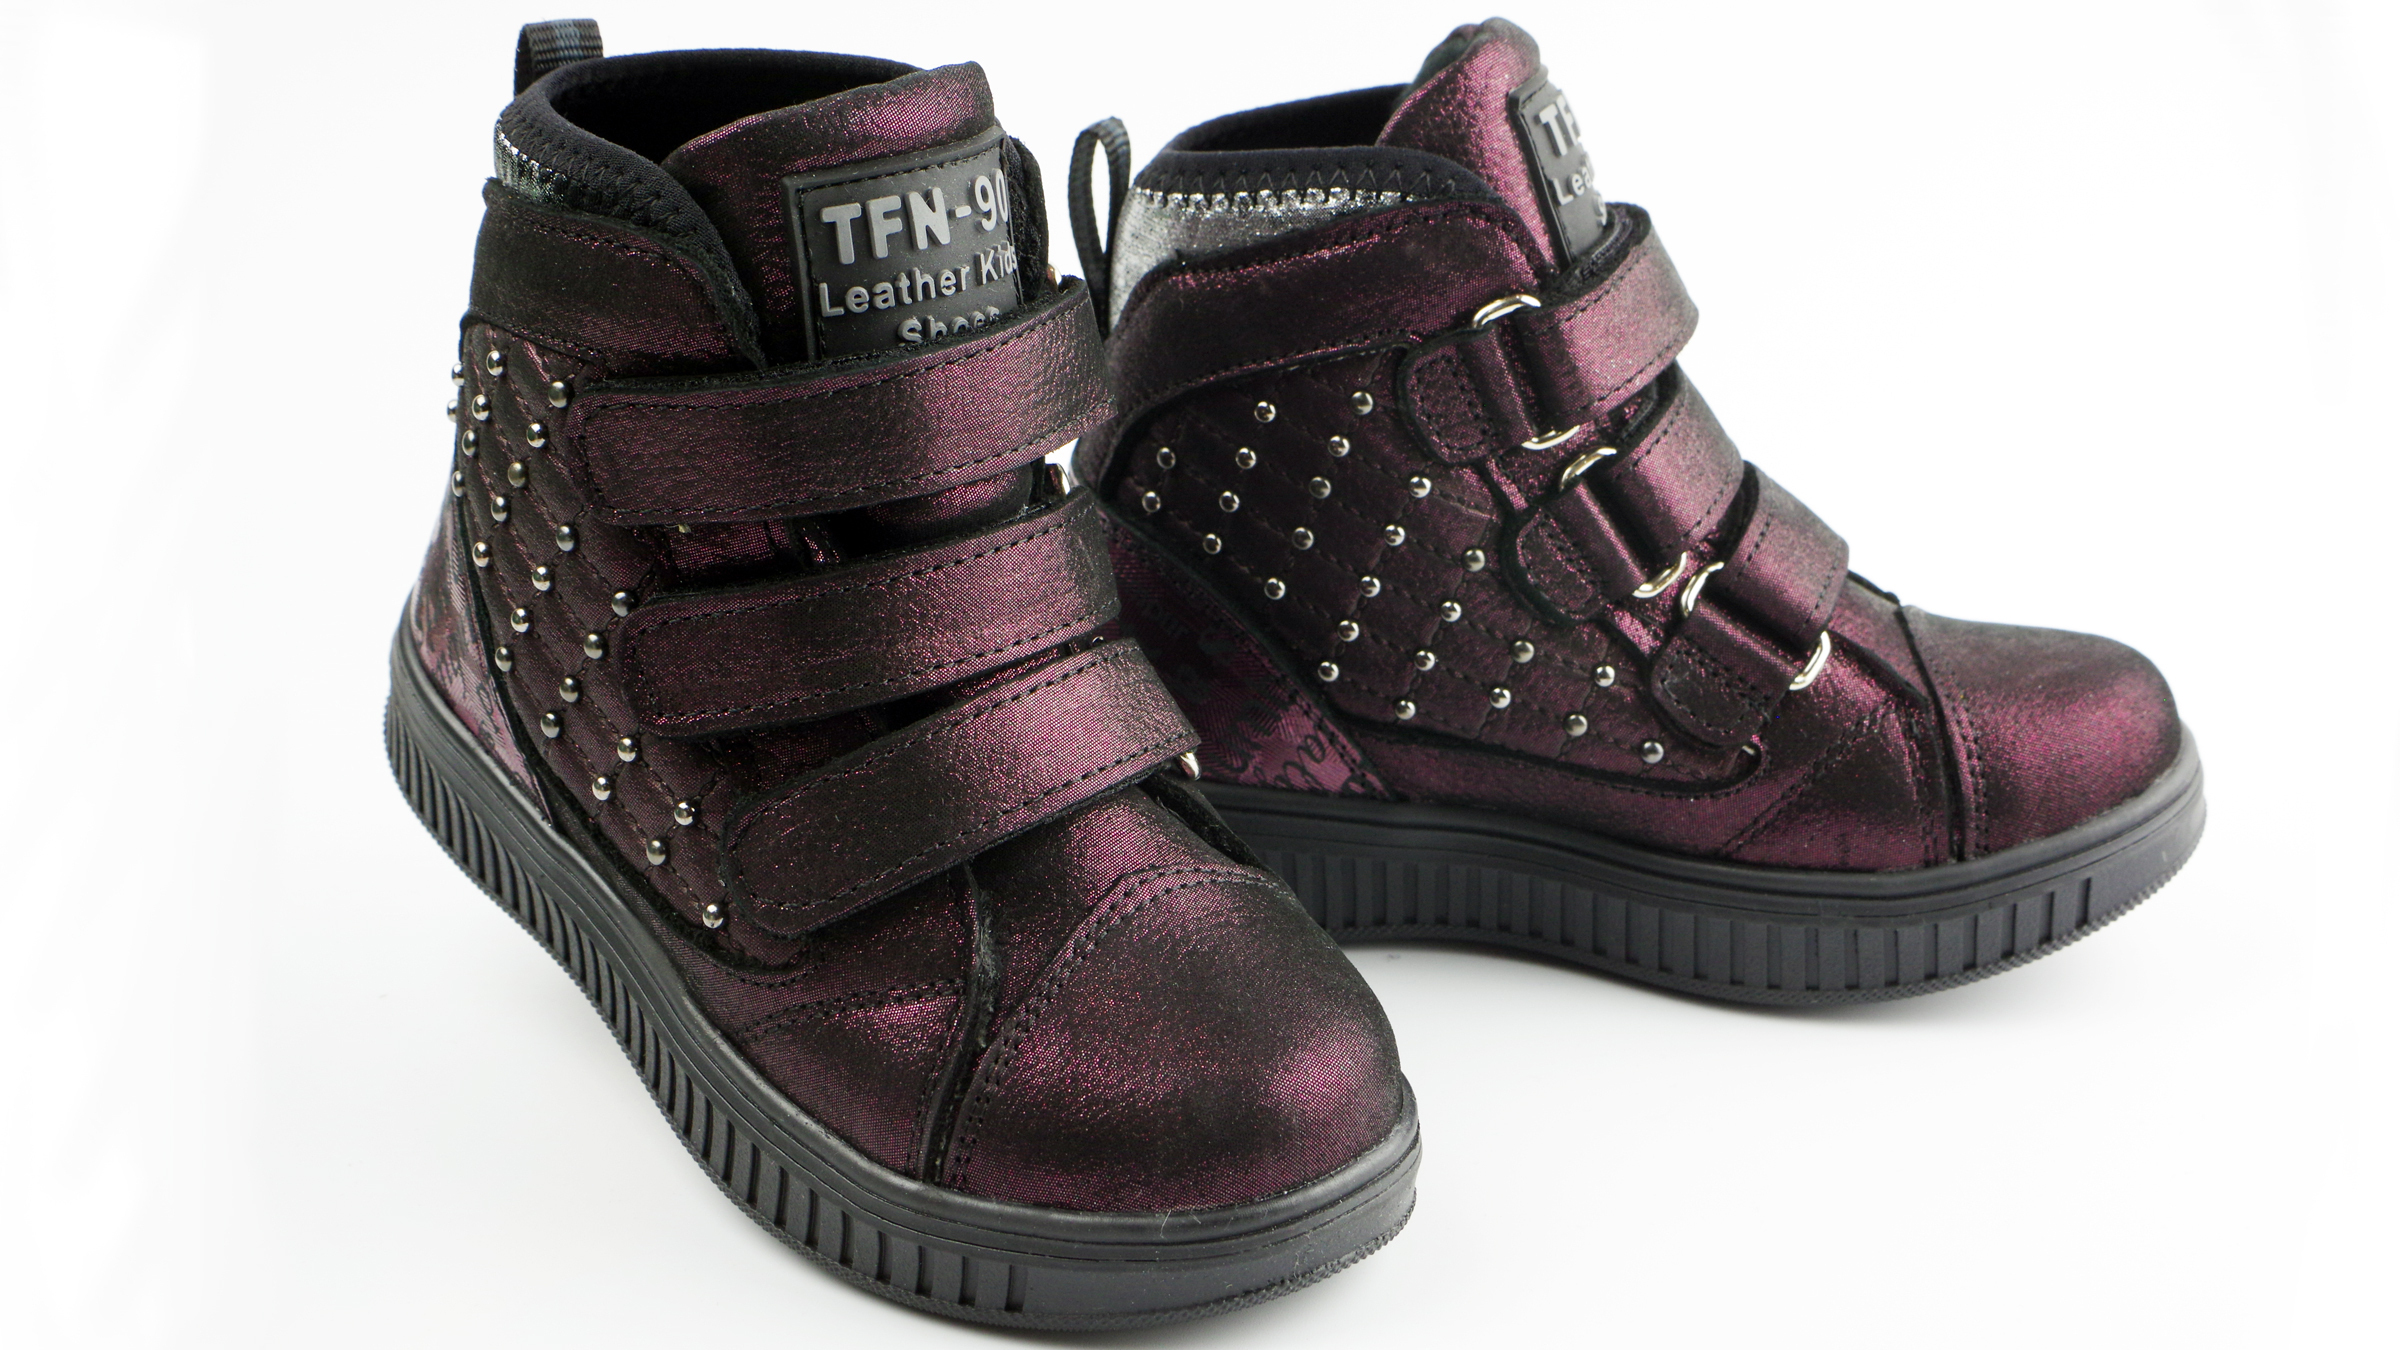 Демисезонные ботинки (2141) материал Натуральная кожа, цвет Фиолетовый  для девочки 26-30 размеры – Sole Kids. Фото 2